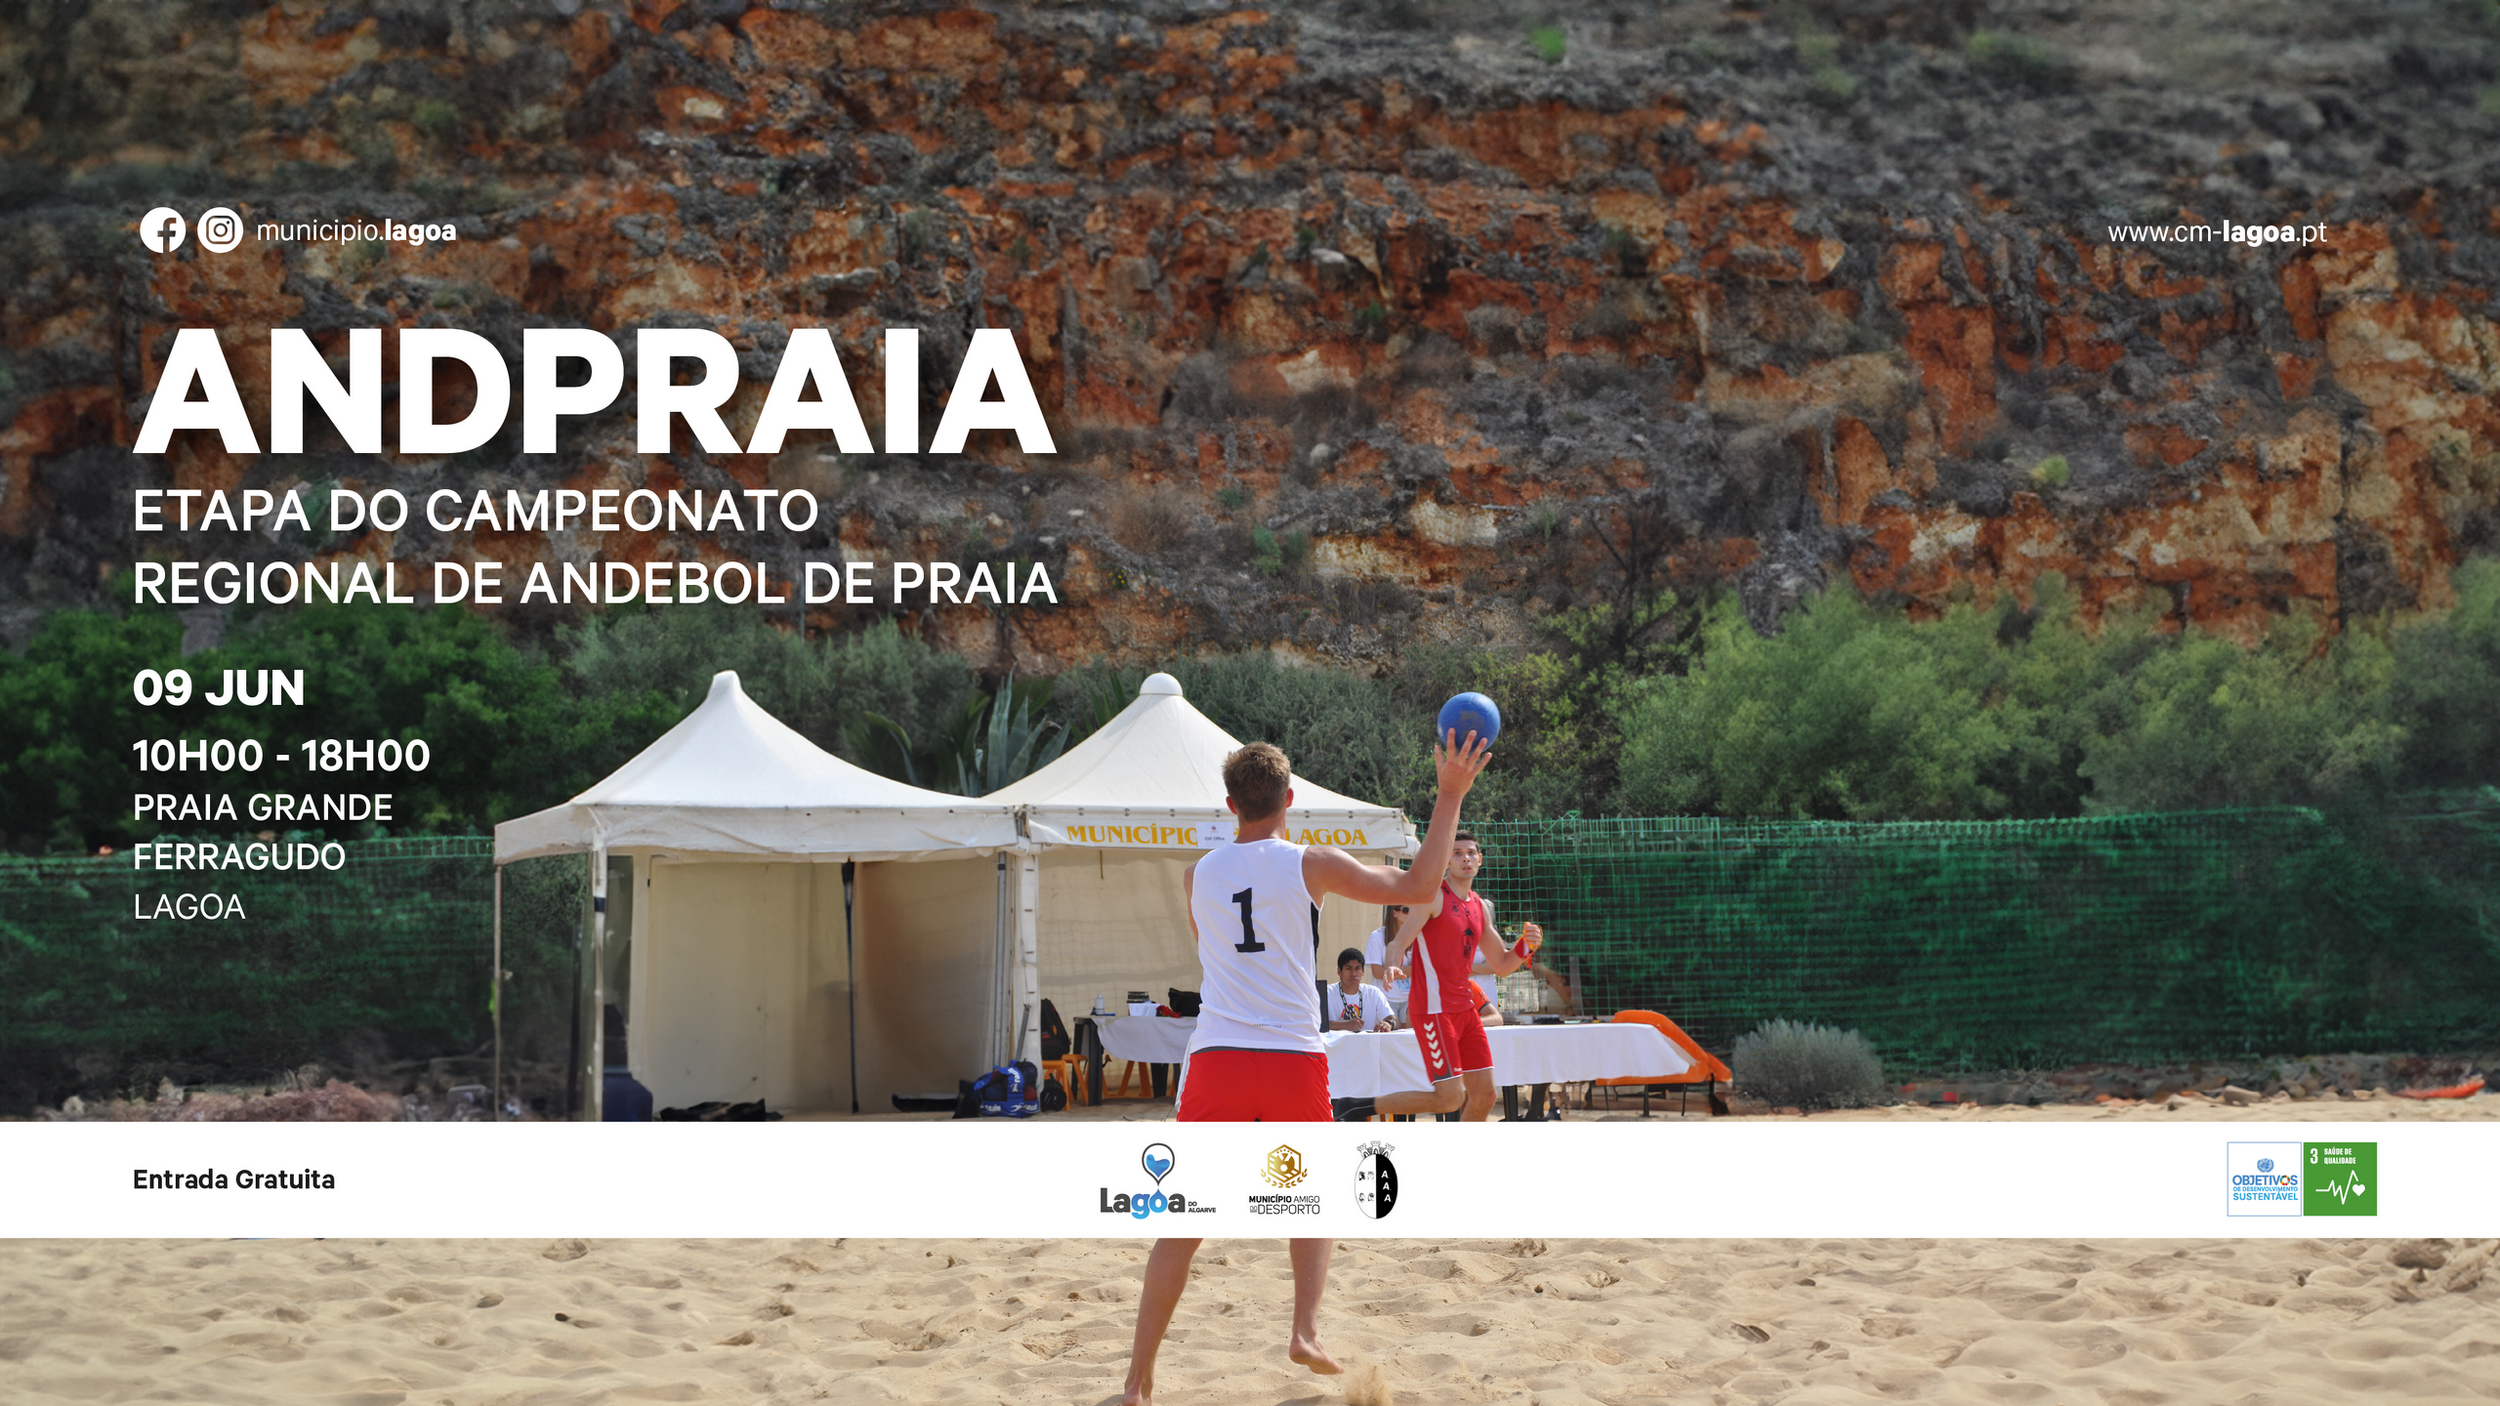  "AndPraia" Etapa do campeonato regional de andebol de praia